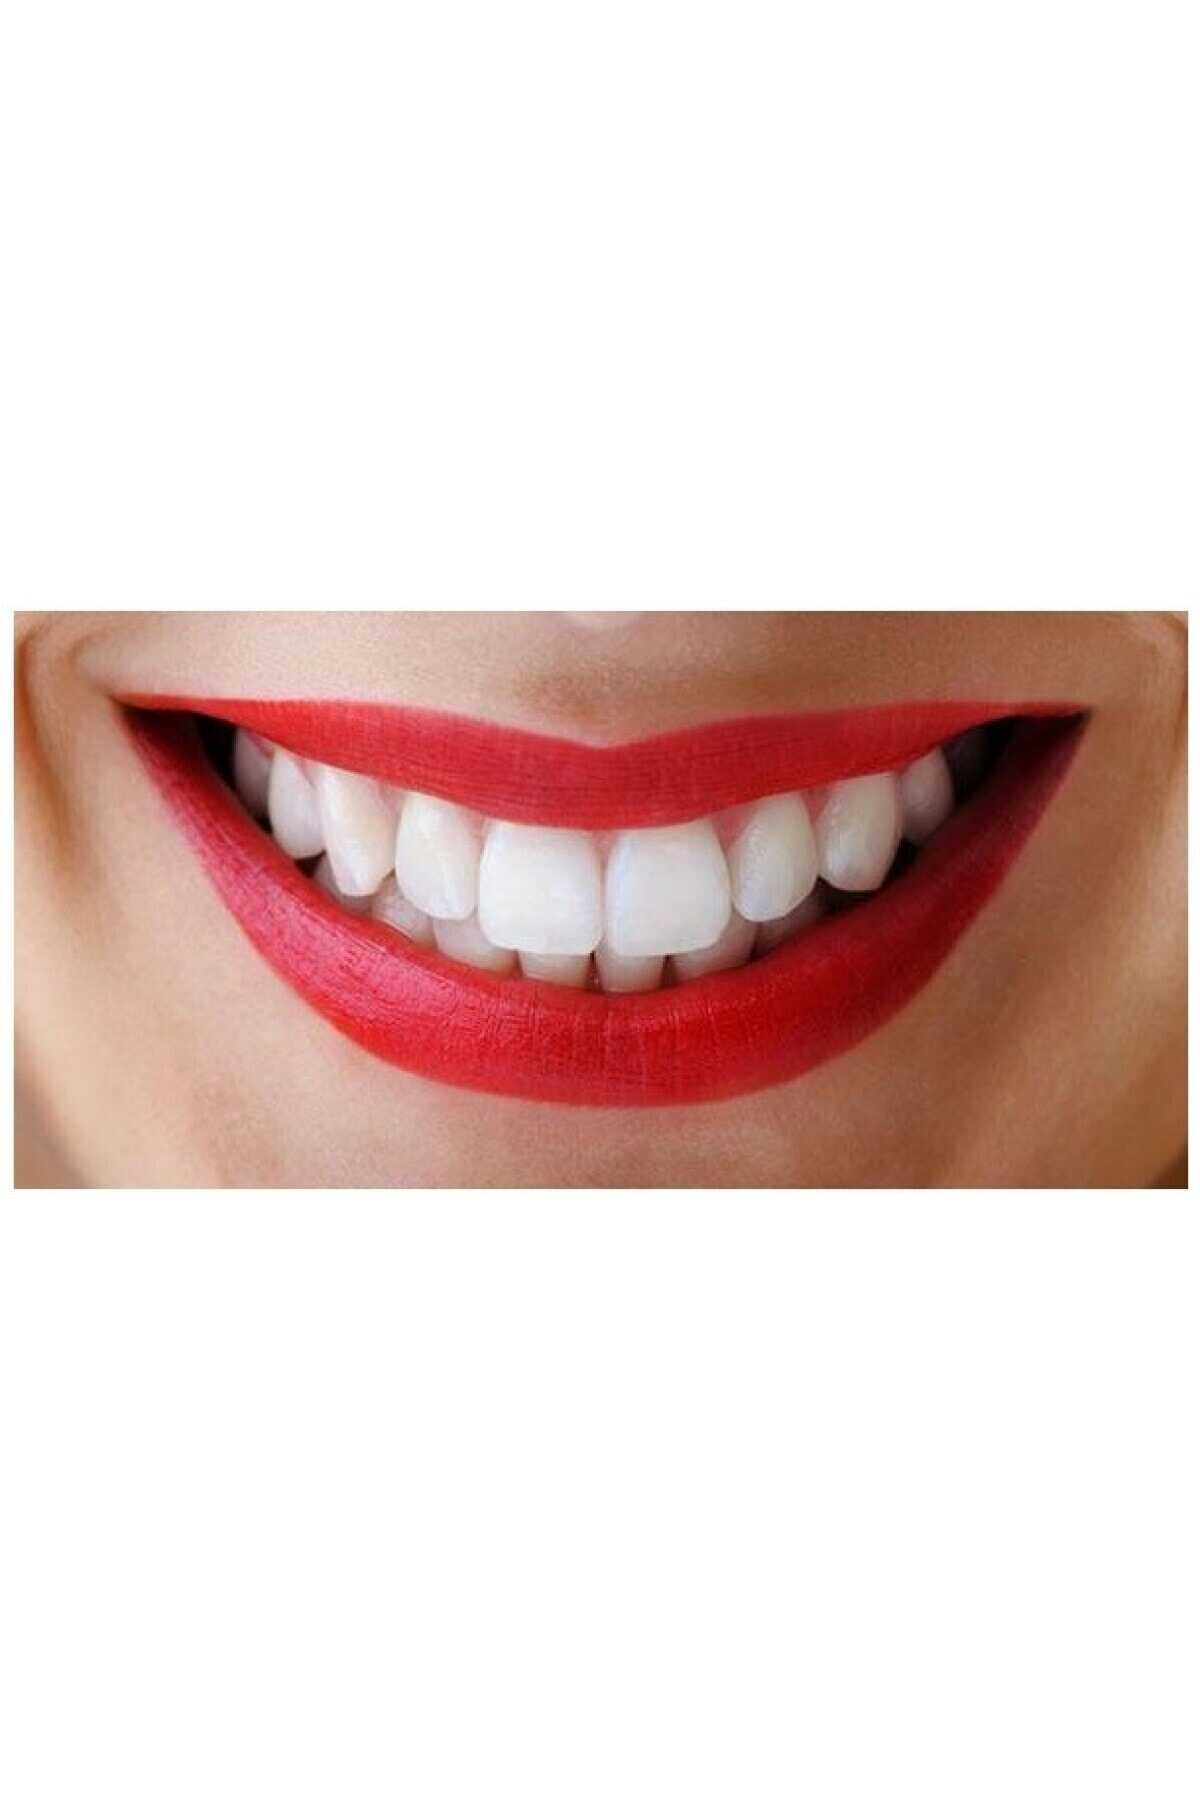 کرم سفید کننده براق کننده دندان 110 گرم برند Diamond